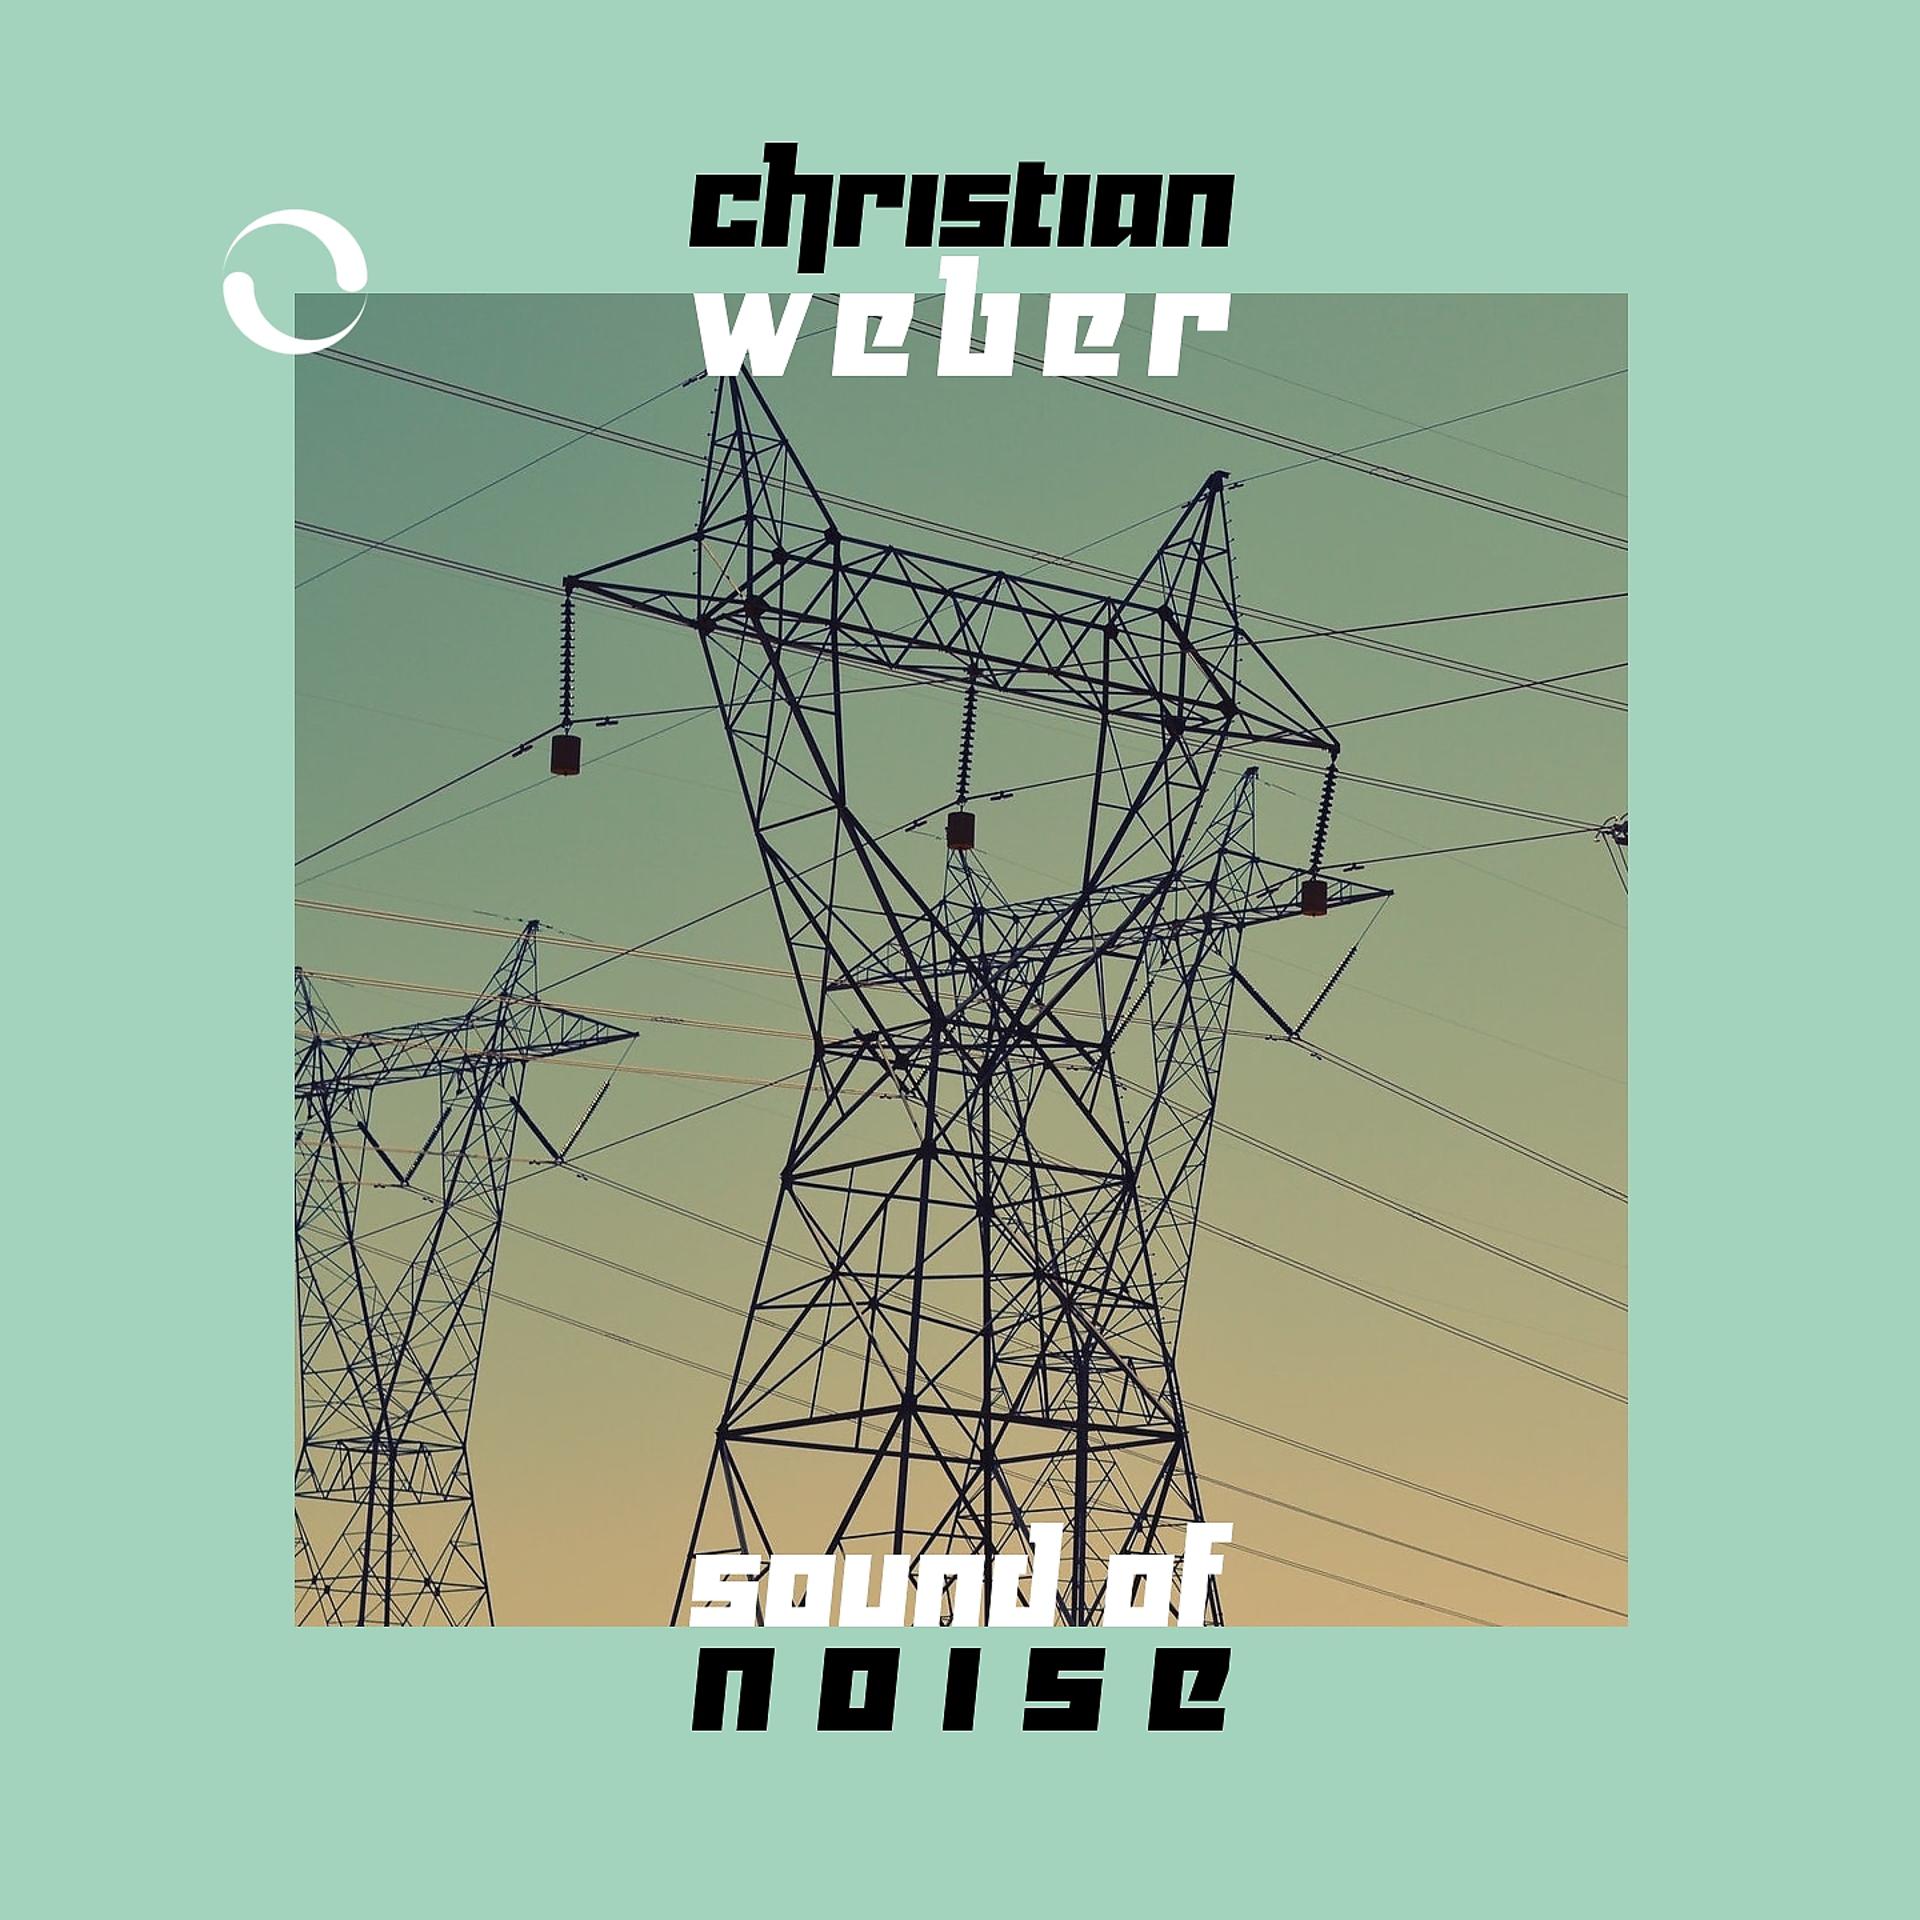 Постер альбома Sound of Noise